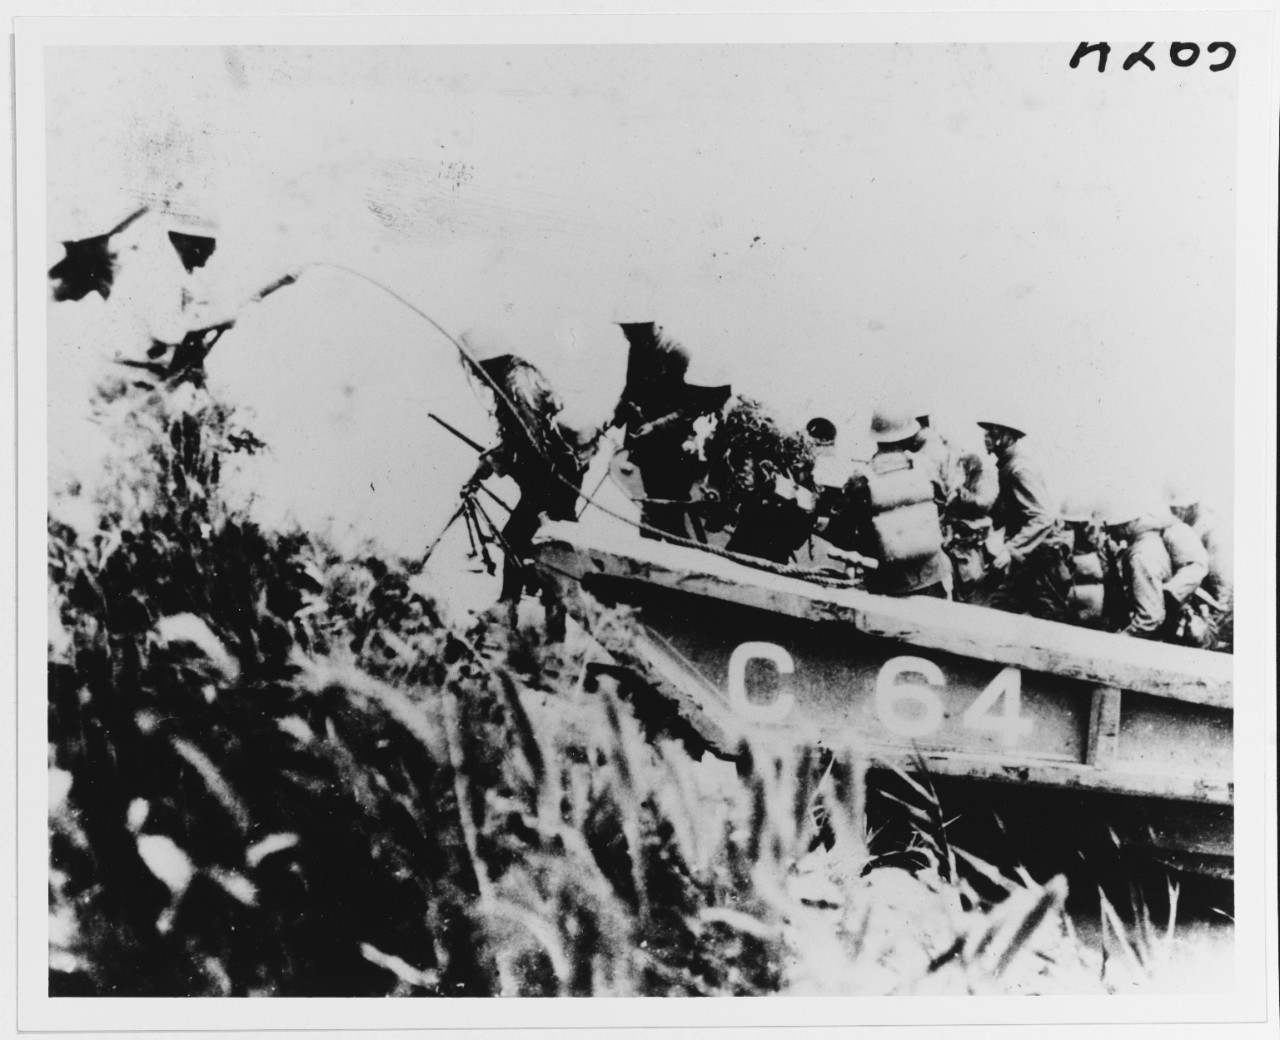 Japanese landing barge, type "A"